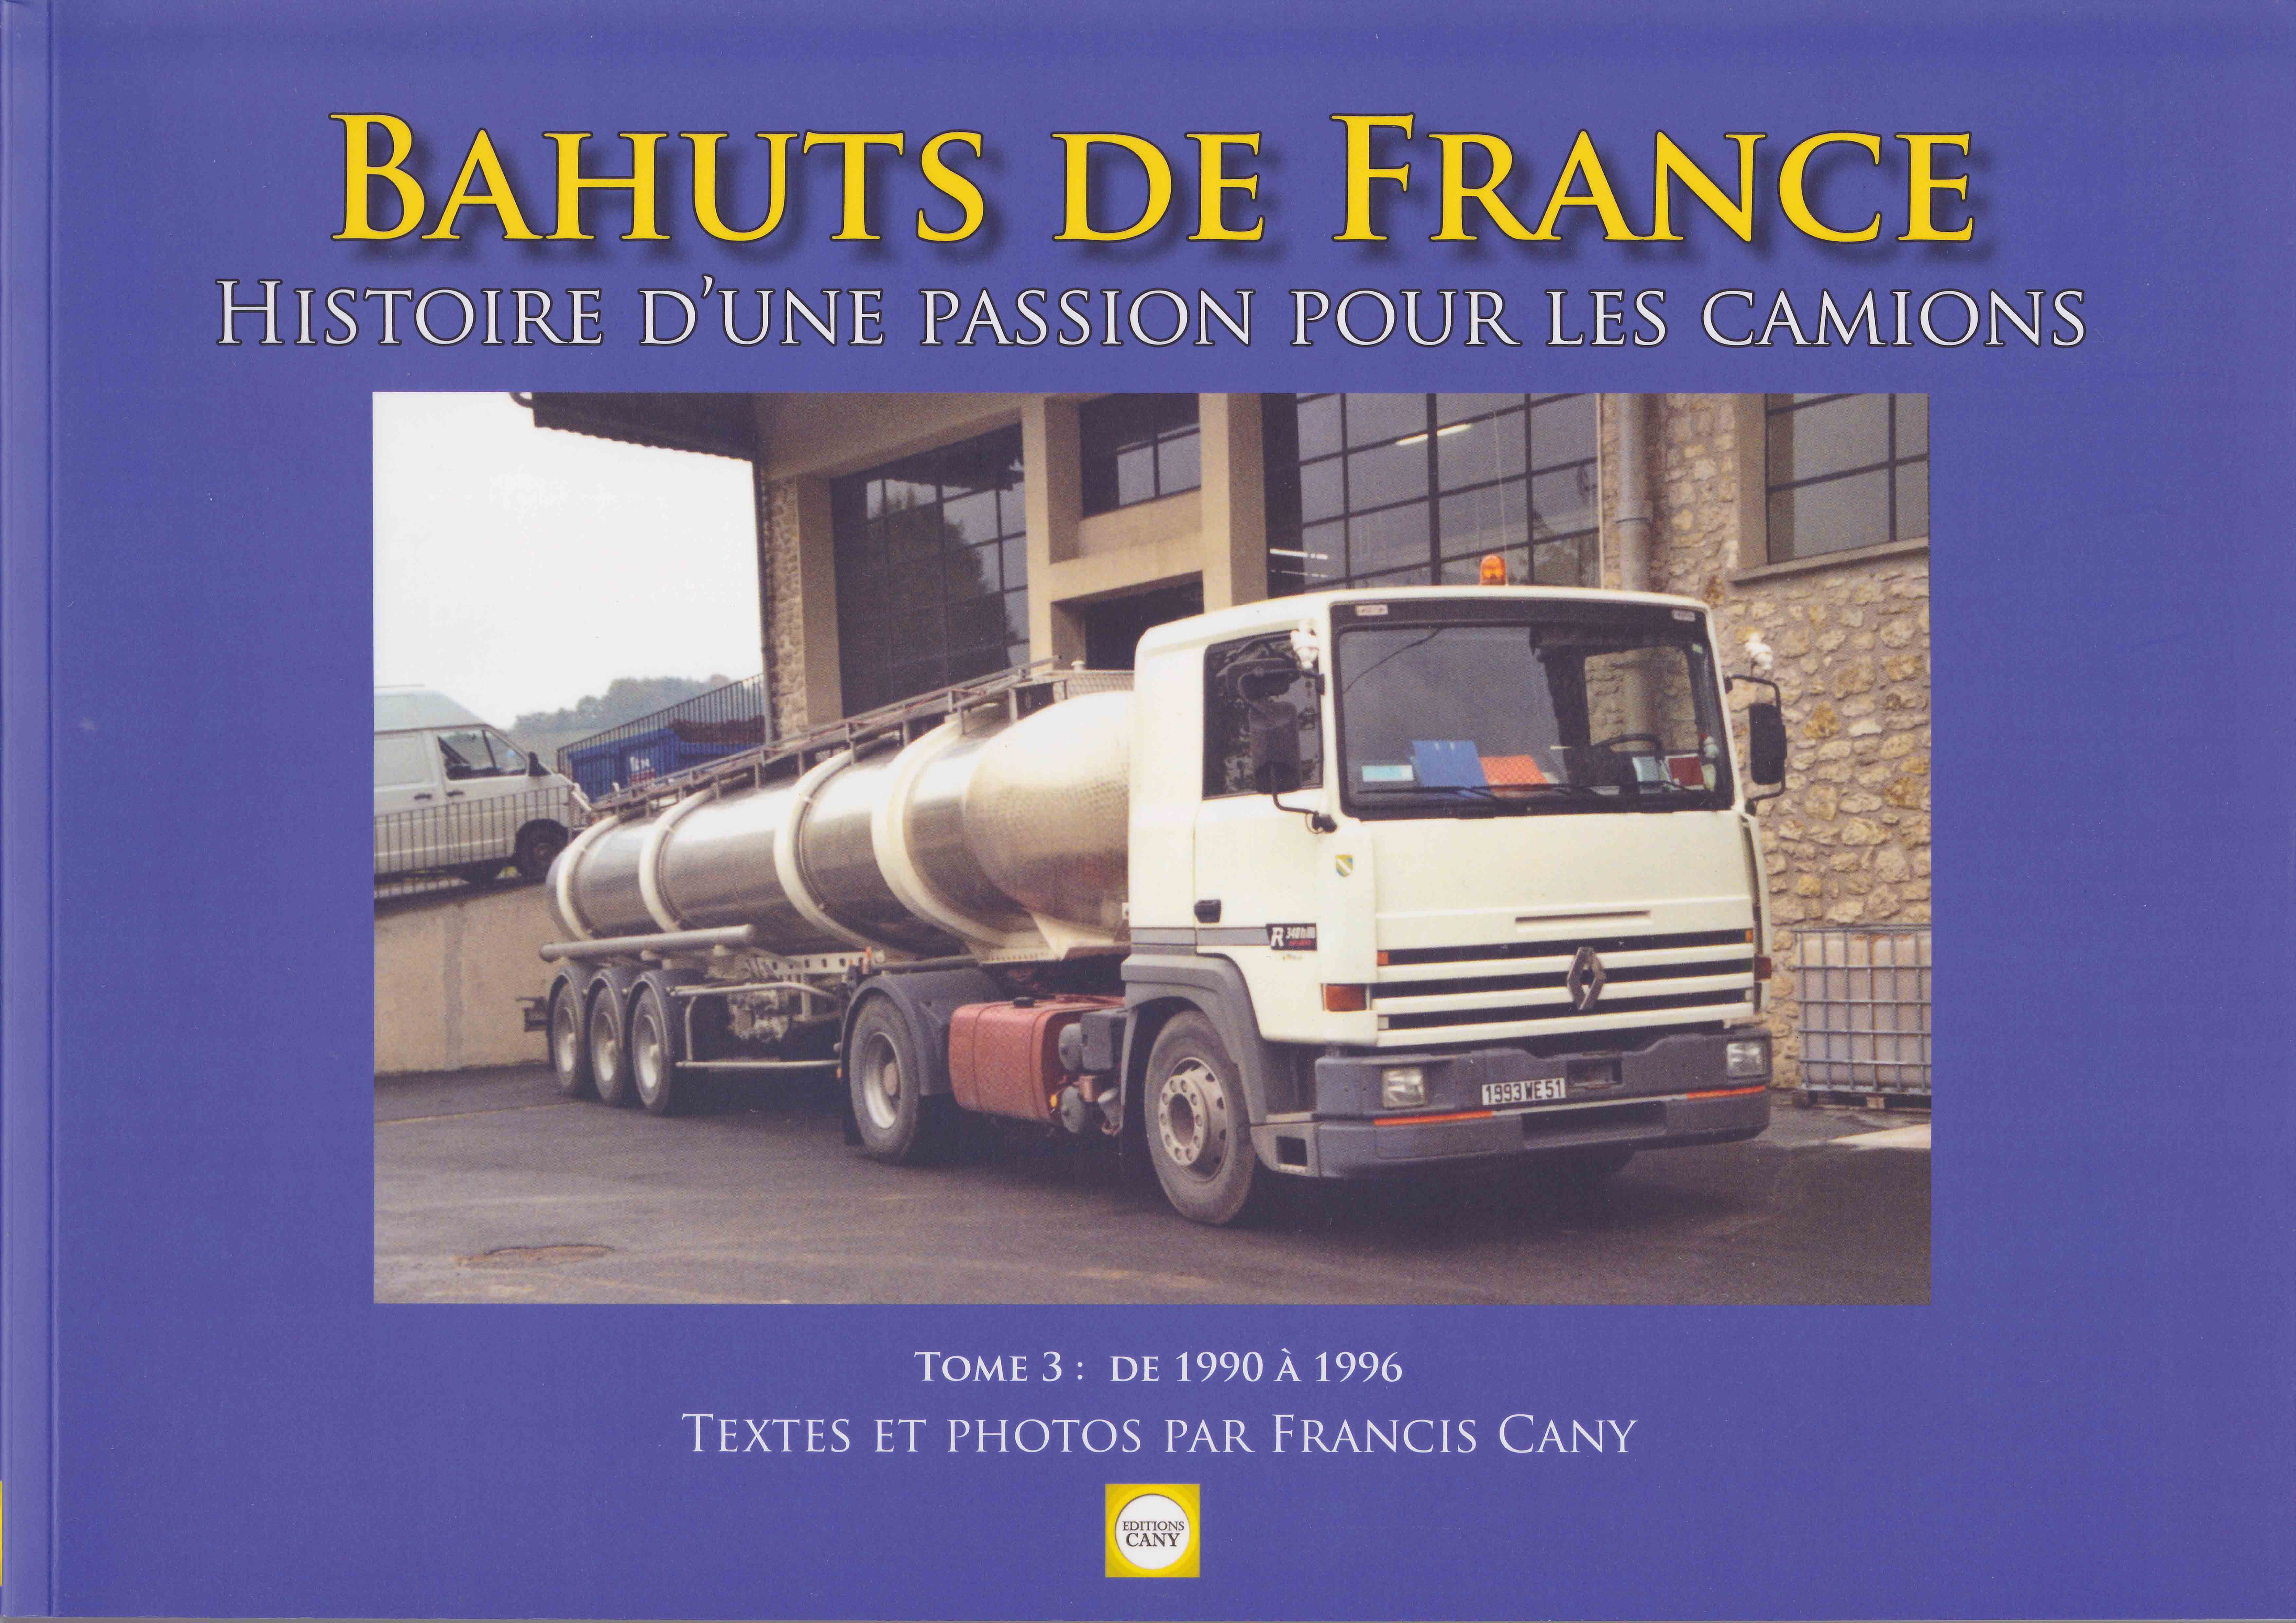 Bahuts de France Tome 3 aux Editions Cany - Histoire d'une passion pour les camions - 1990 à 1996 - Textes et photos par Francis Cany - 158 pages